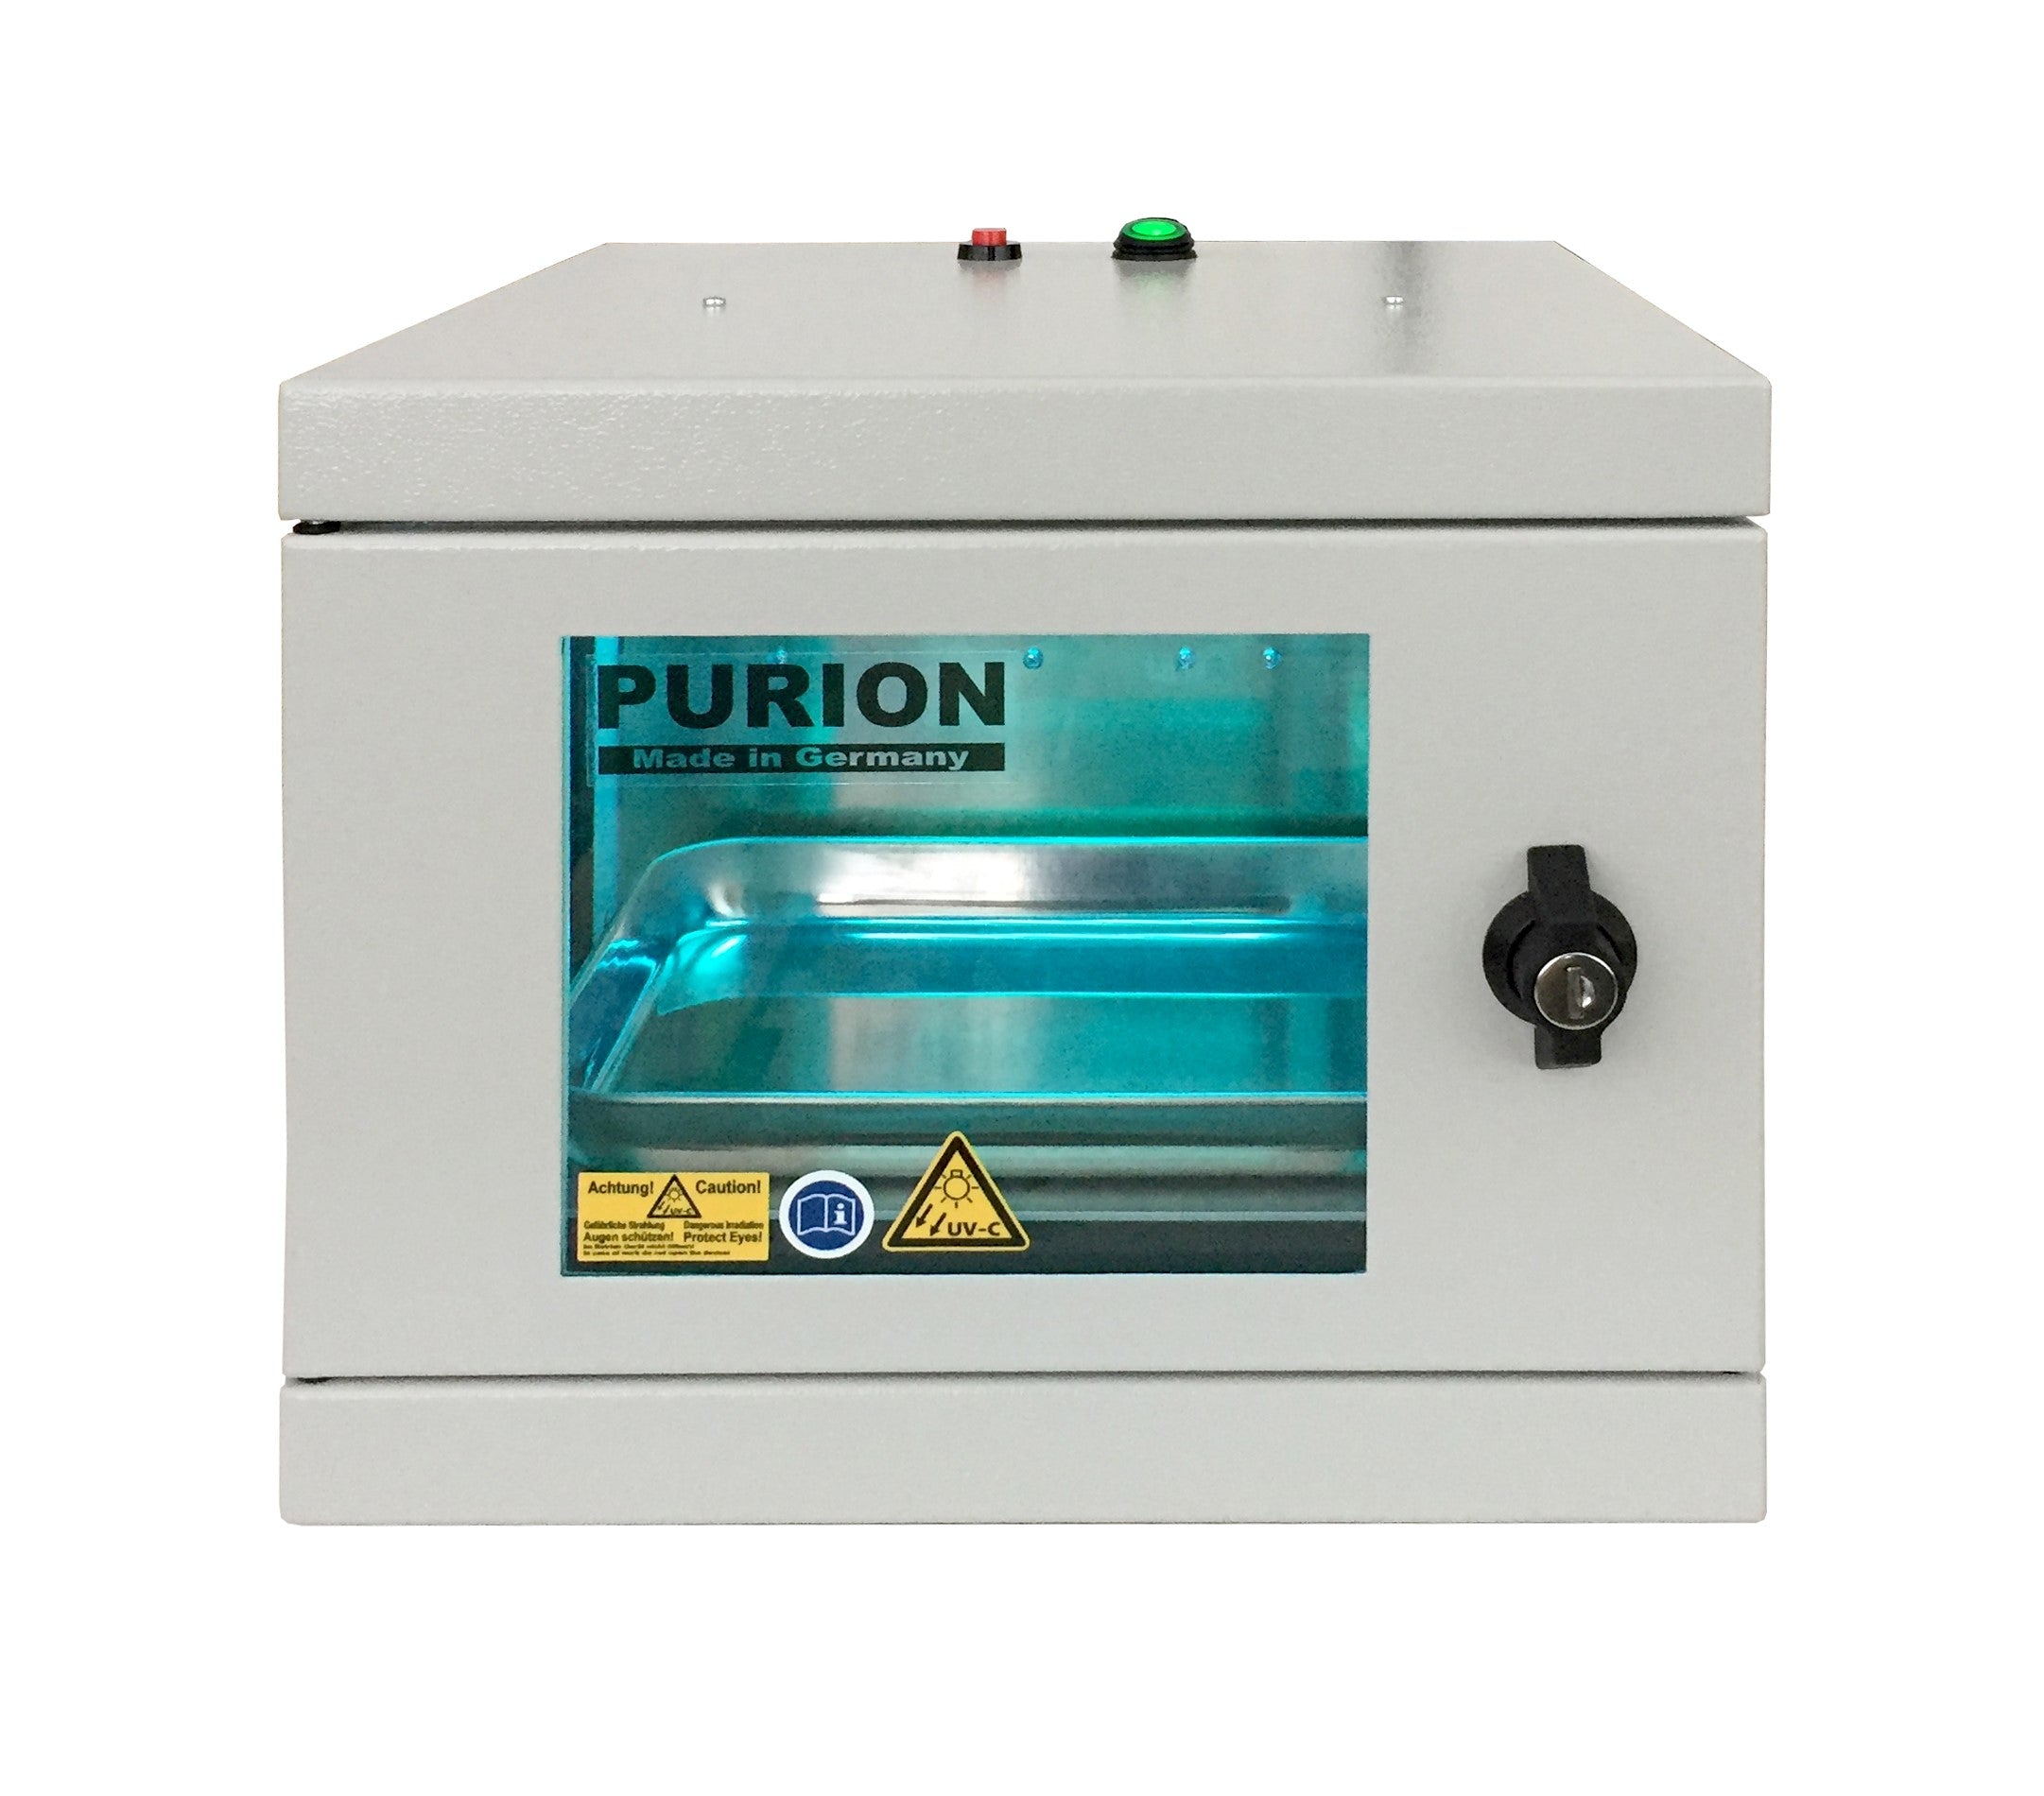 Das Purion CNC-Bearbeitungszentrum der PURION GmbH verfügt jetzt über die PURION UVC Box Small Extra für Hygiene und Desinfektion.